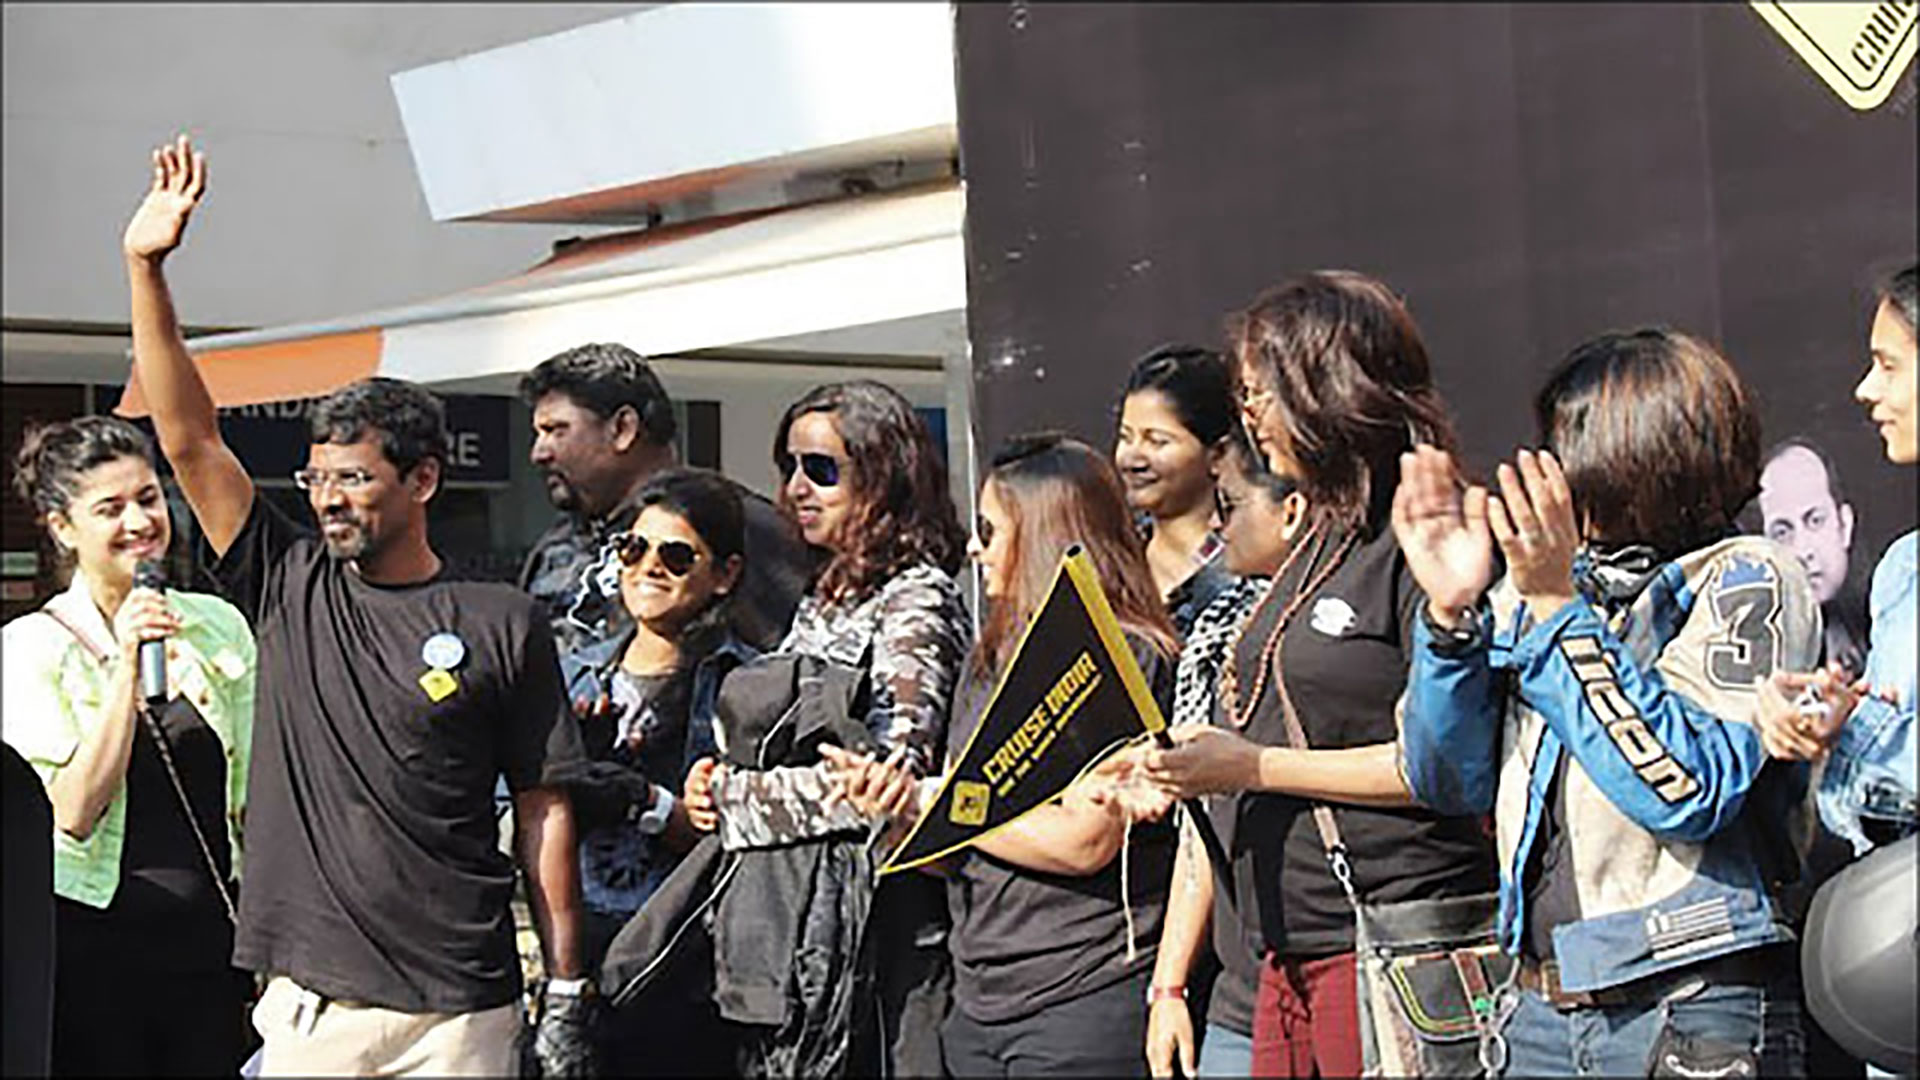 Rally for women empowerment by Cruise India - Mumbai